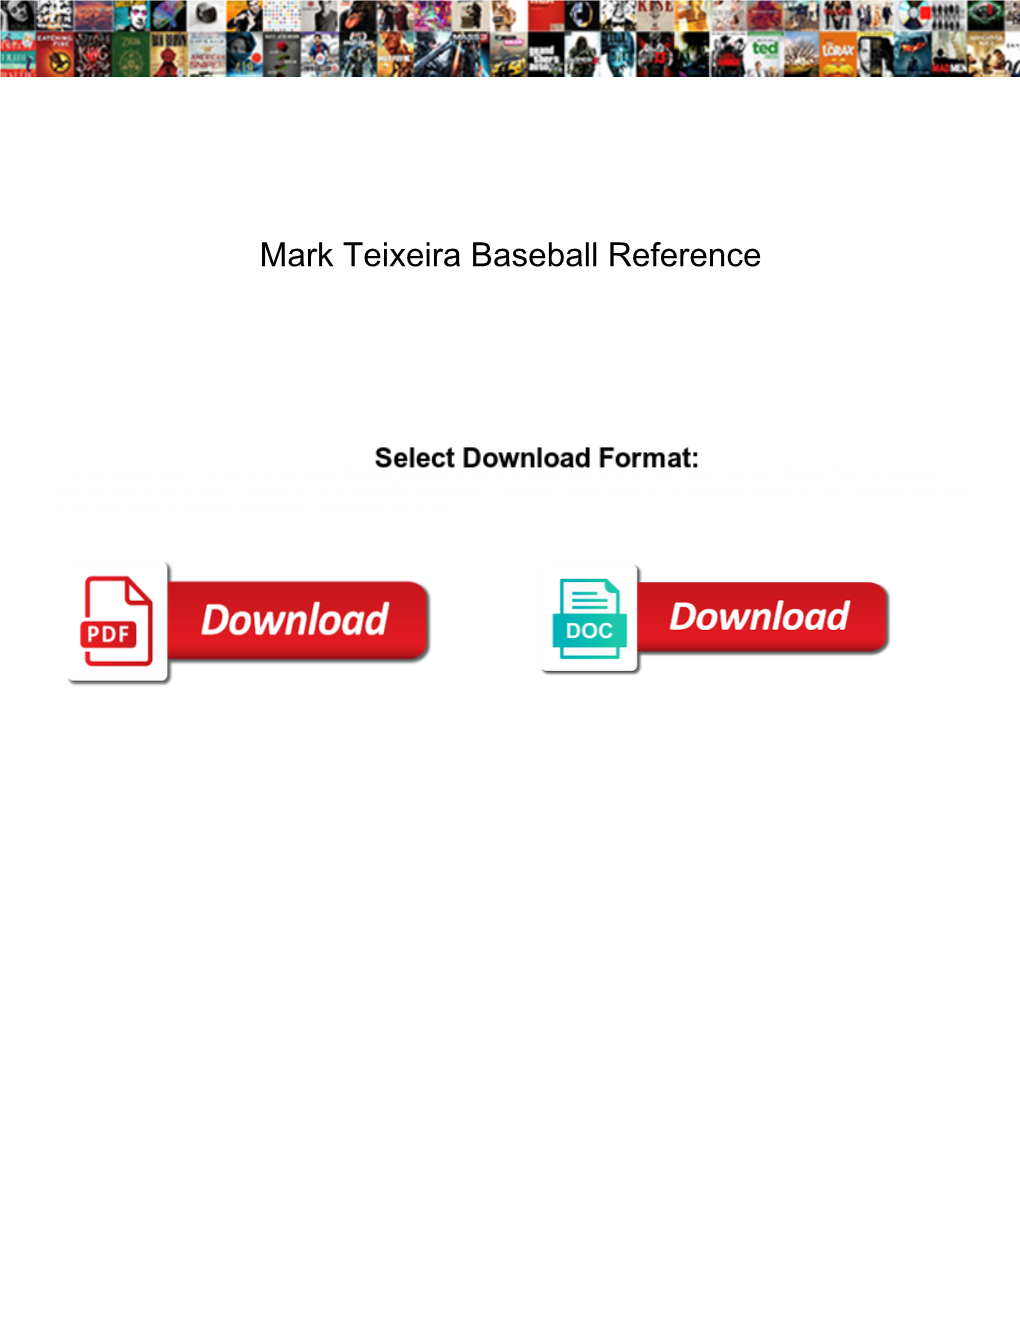 Mark Teixeira Baseball Reference